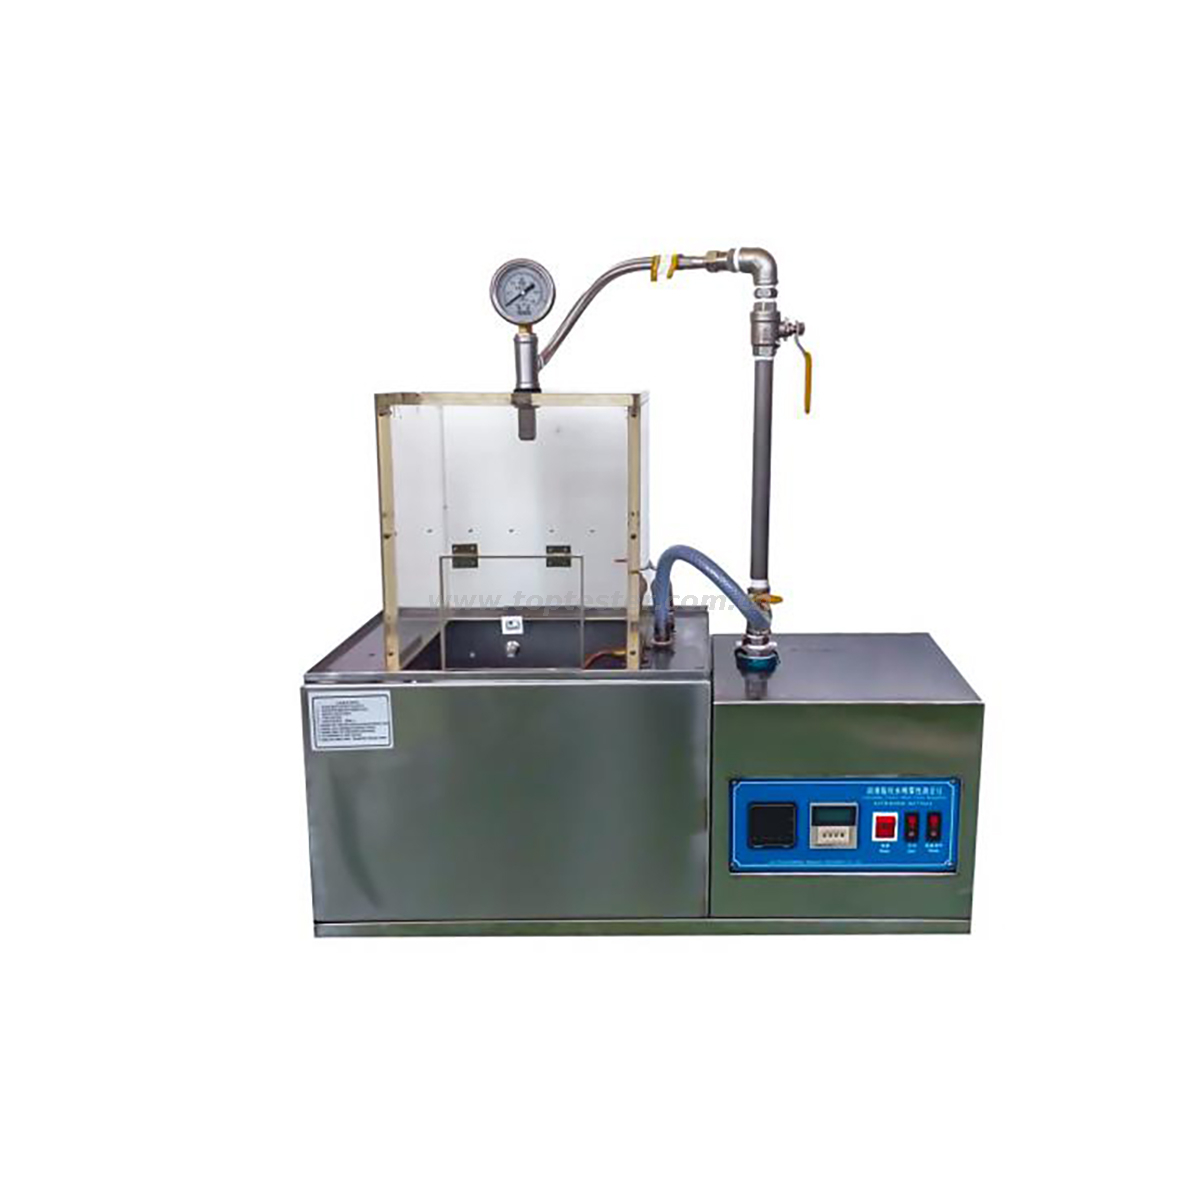 جهاز اختبار مقاومة رش الماء والشحوم TP-4049